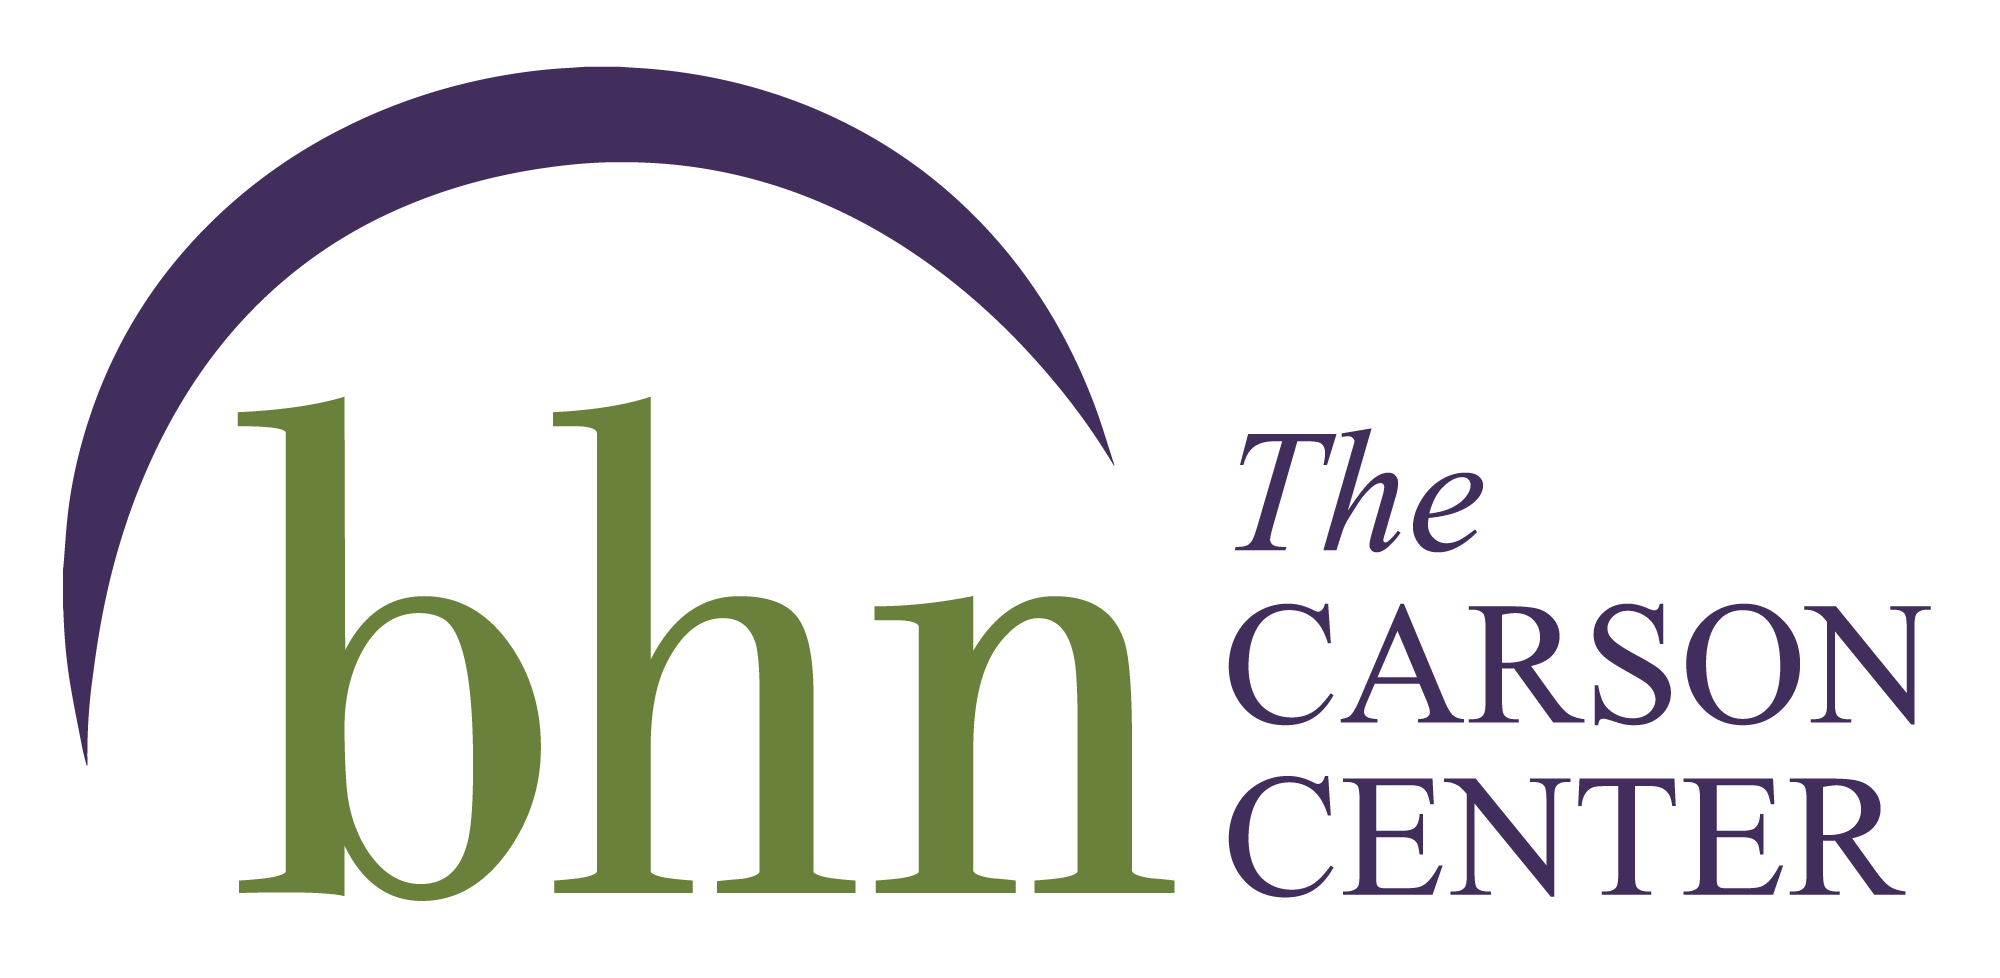 Carson Center